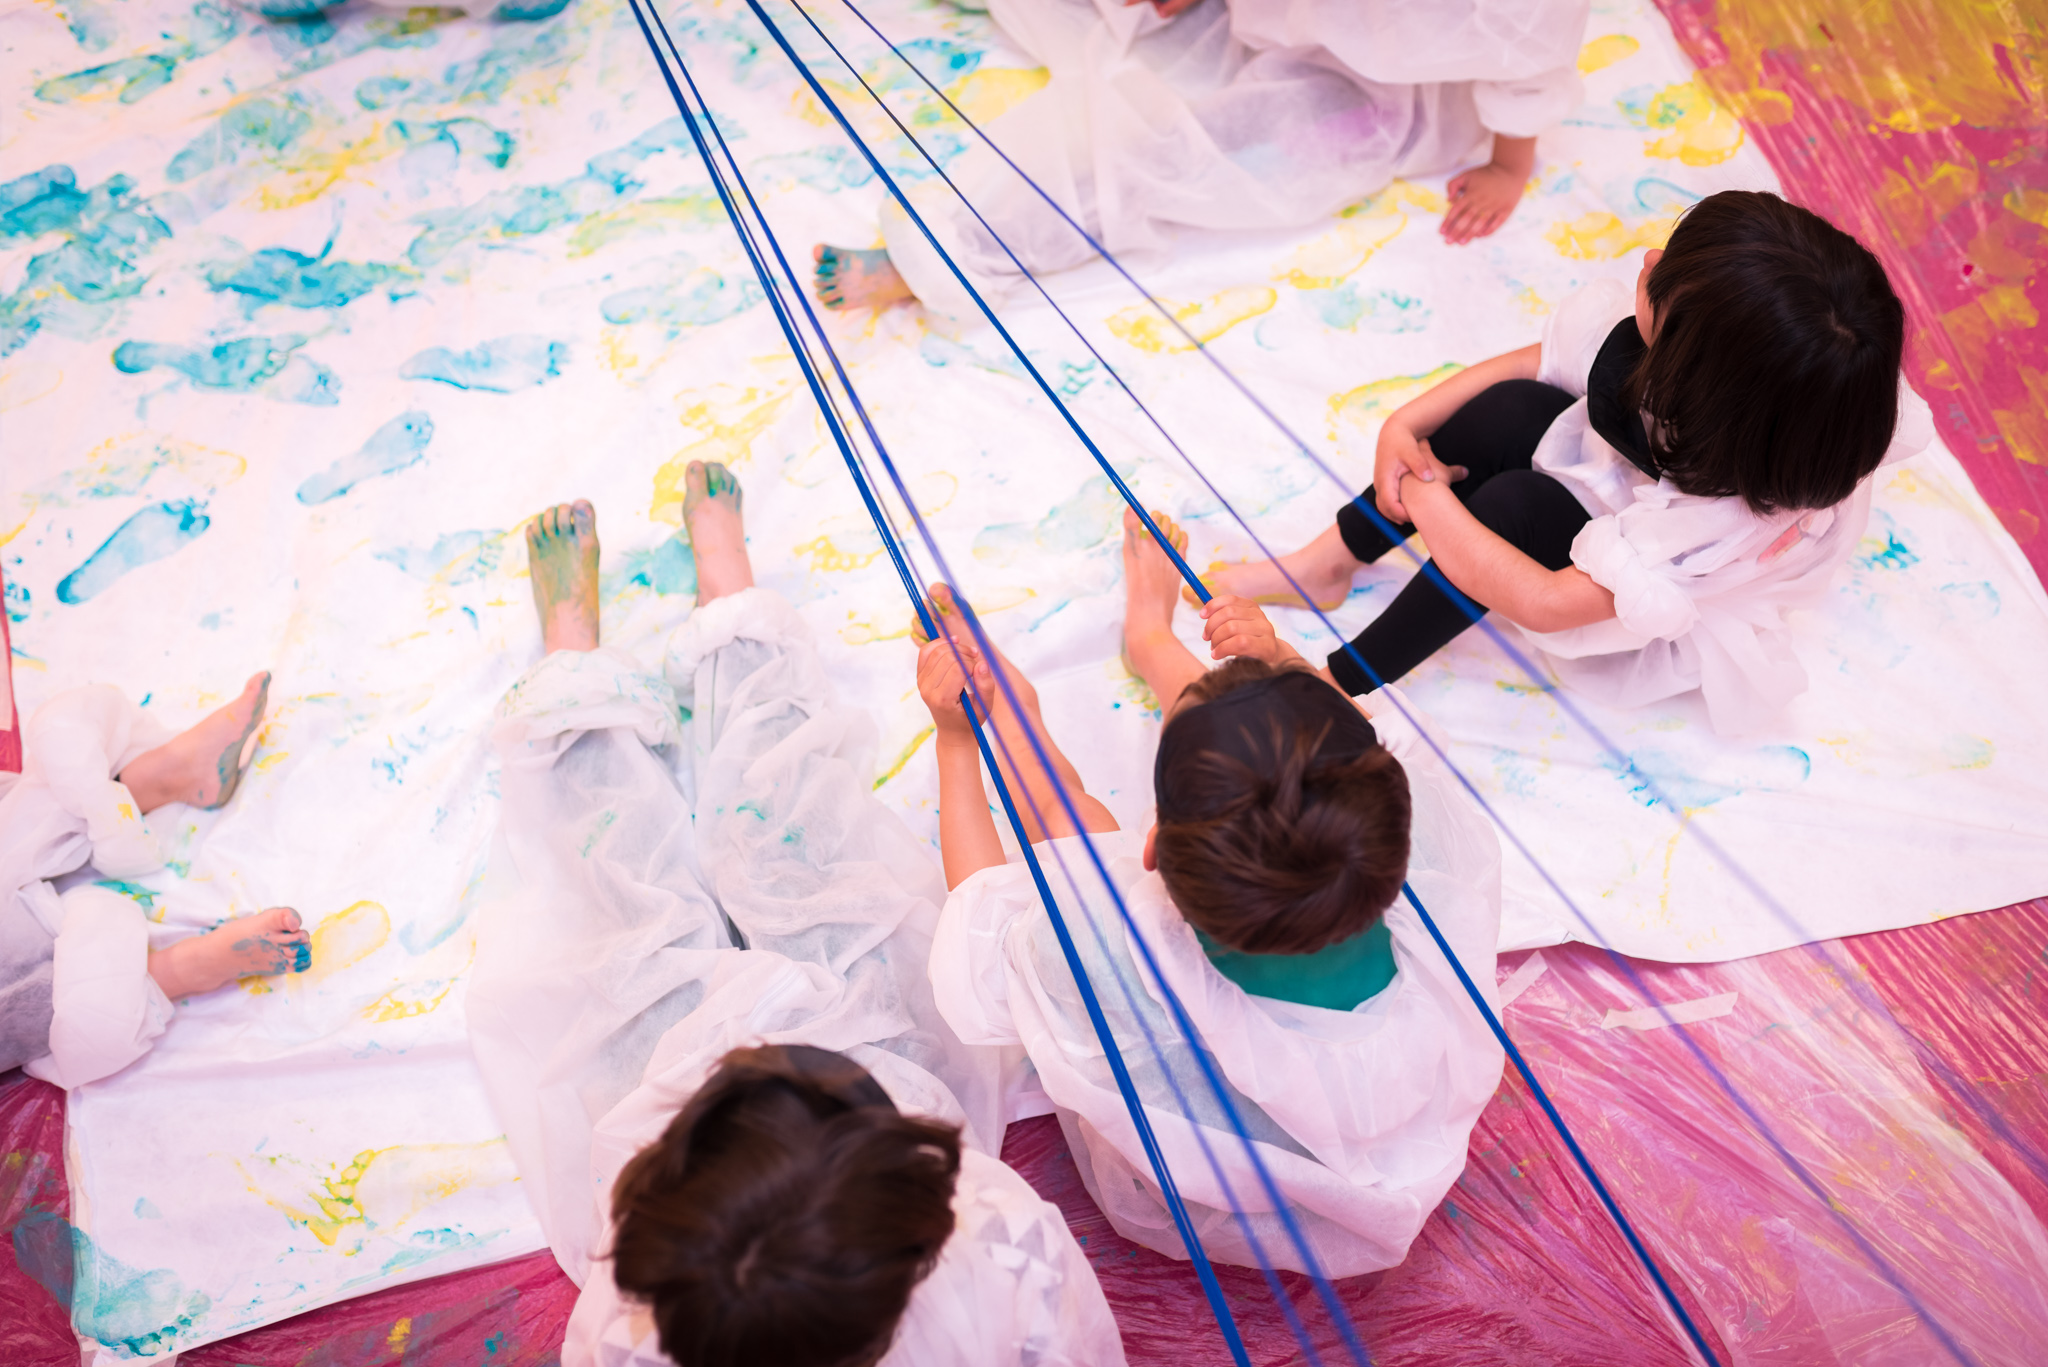 Vista superior de cuatro niñas y niños sentados sobre una tela pintada, tensando cuerdas sobre esta.